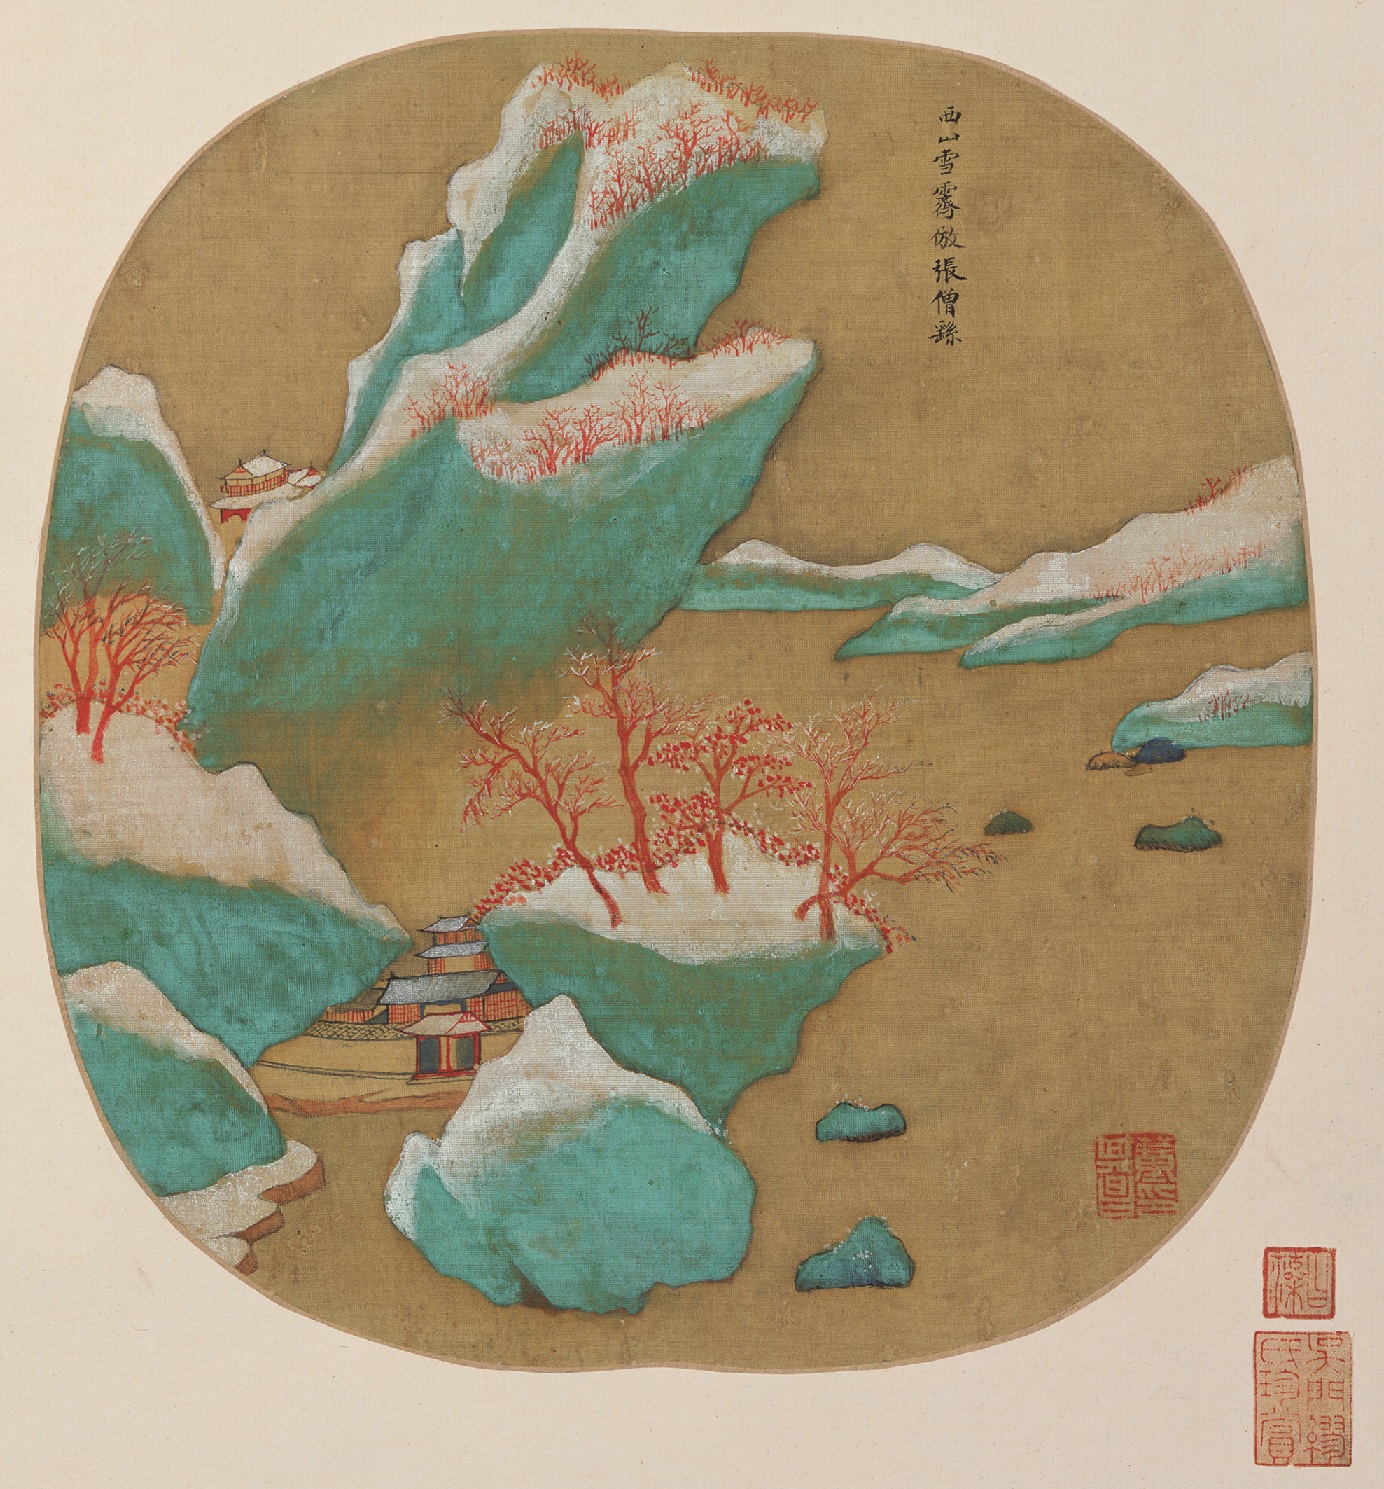 董其昌的创作进入真正的成熟期，最著名的代表作便是《秋兴八景图》。图为其中的“西山雪霁”。.jpg